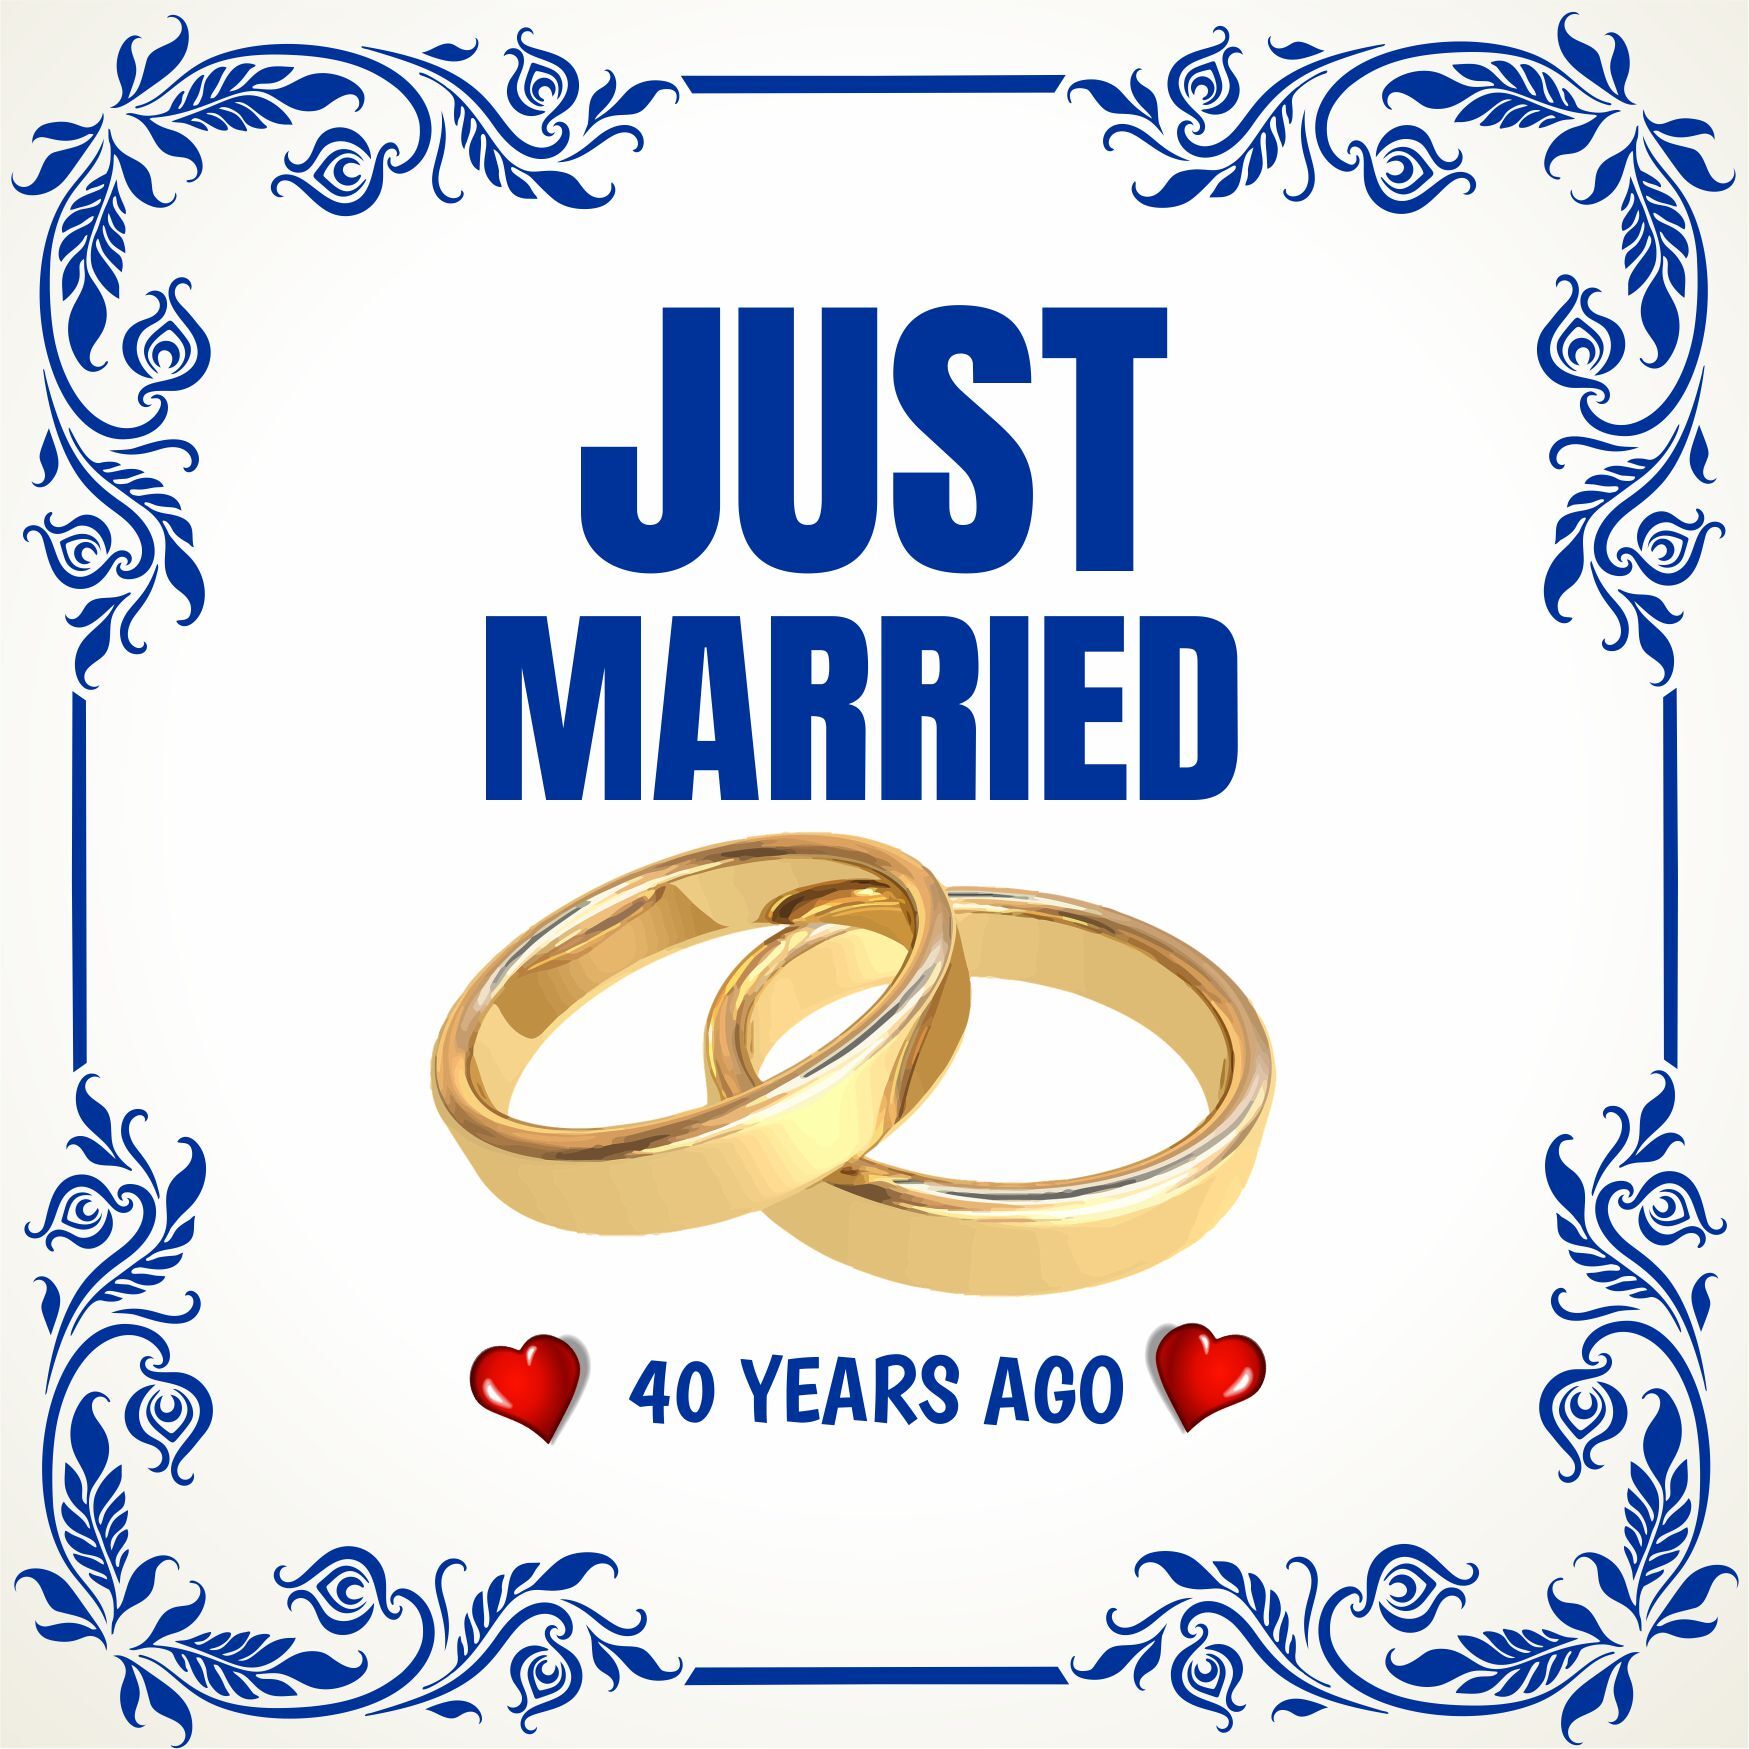 Tegel just married 40 years ago pas getrouwd 40 jaar geleden